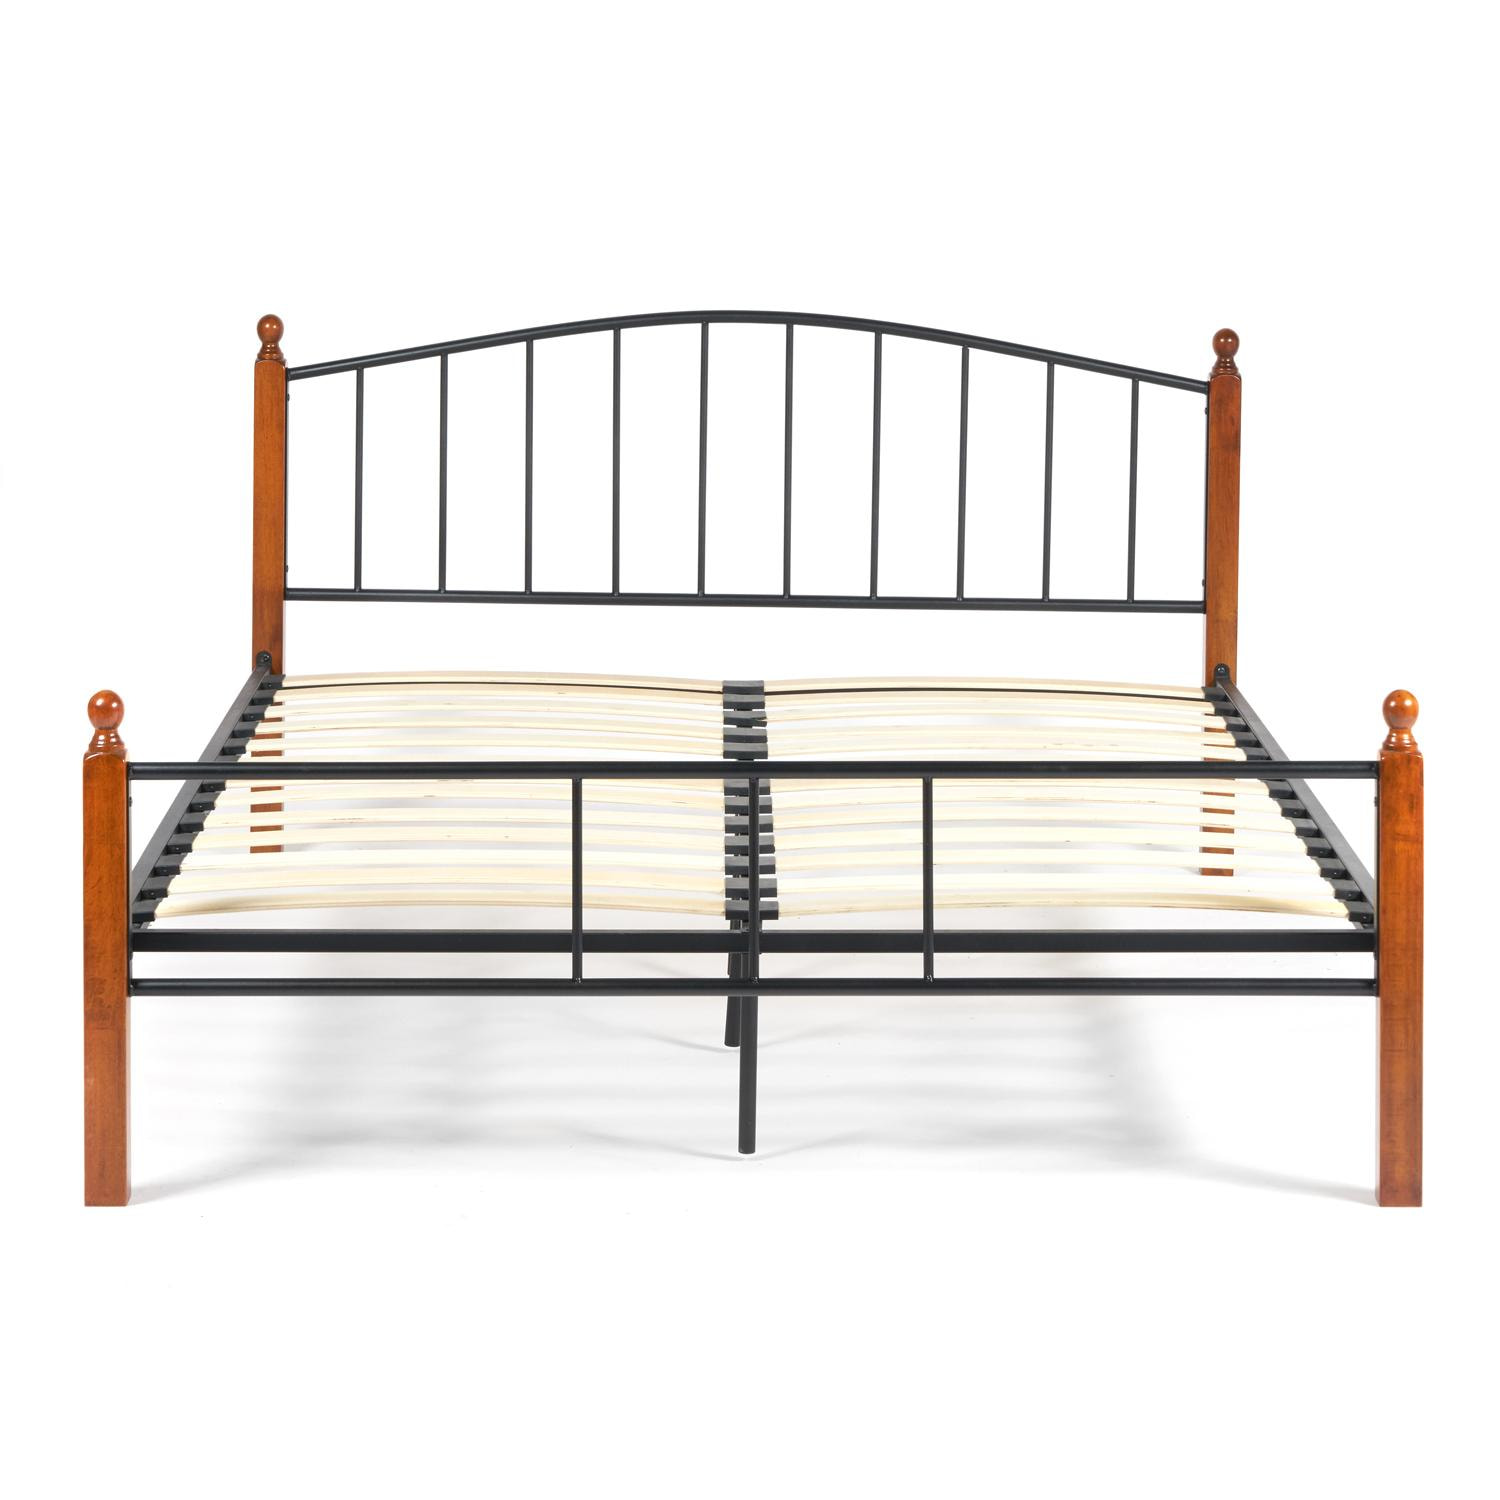 Кровать AT-915 Wood slat base дерево гевея/металл, 160*200 см (Queen bed), красный дуб/черный